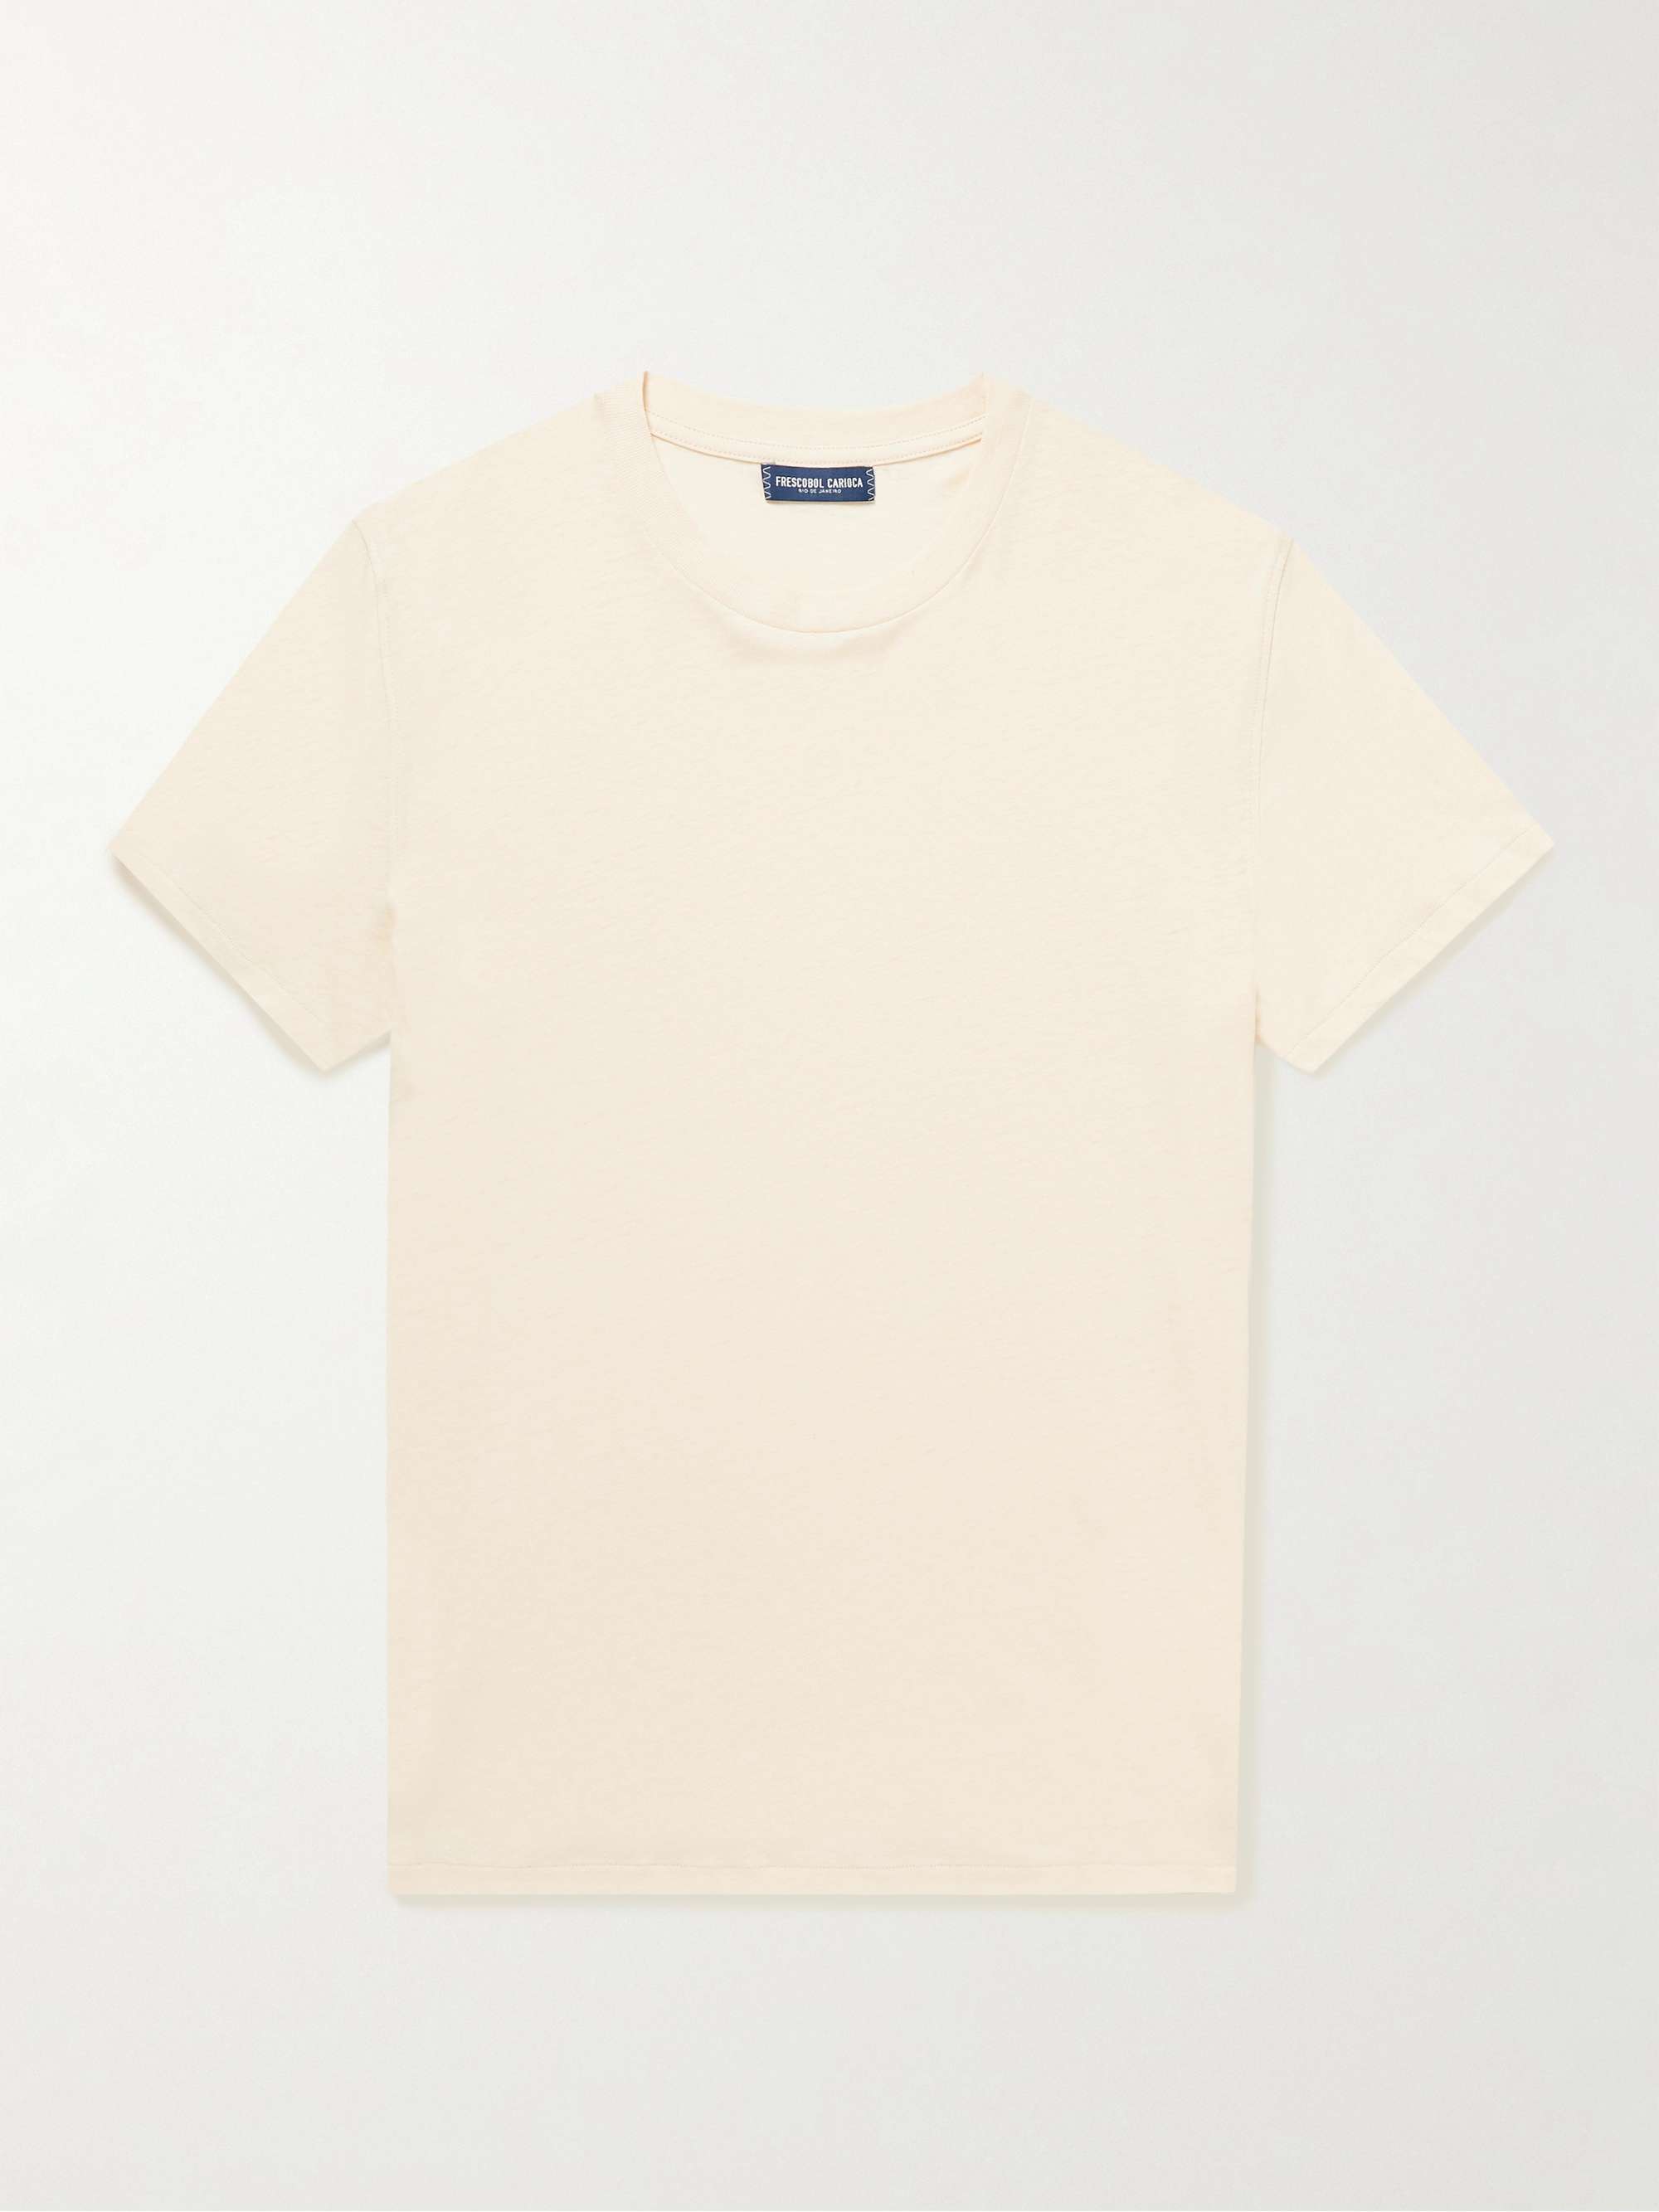 FRESCOBOL CARIOCA Slim-Fit Cotton and Linen-Blend Jersey T-Shirt